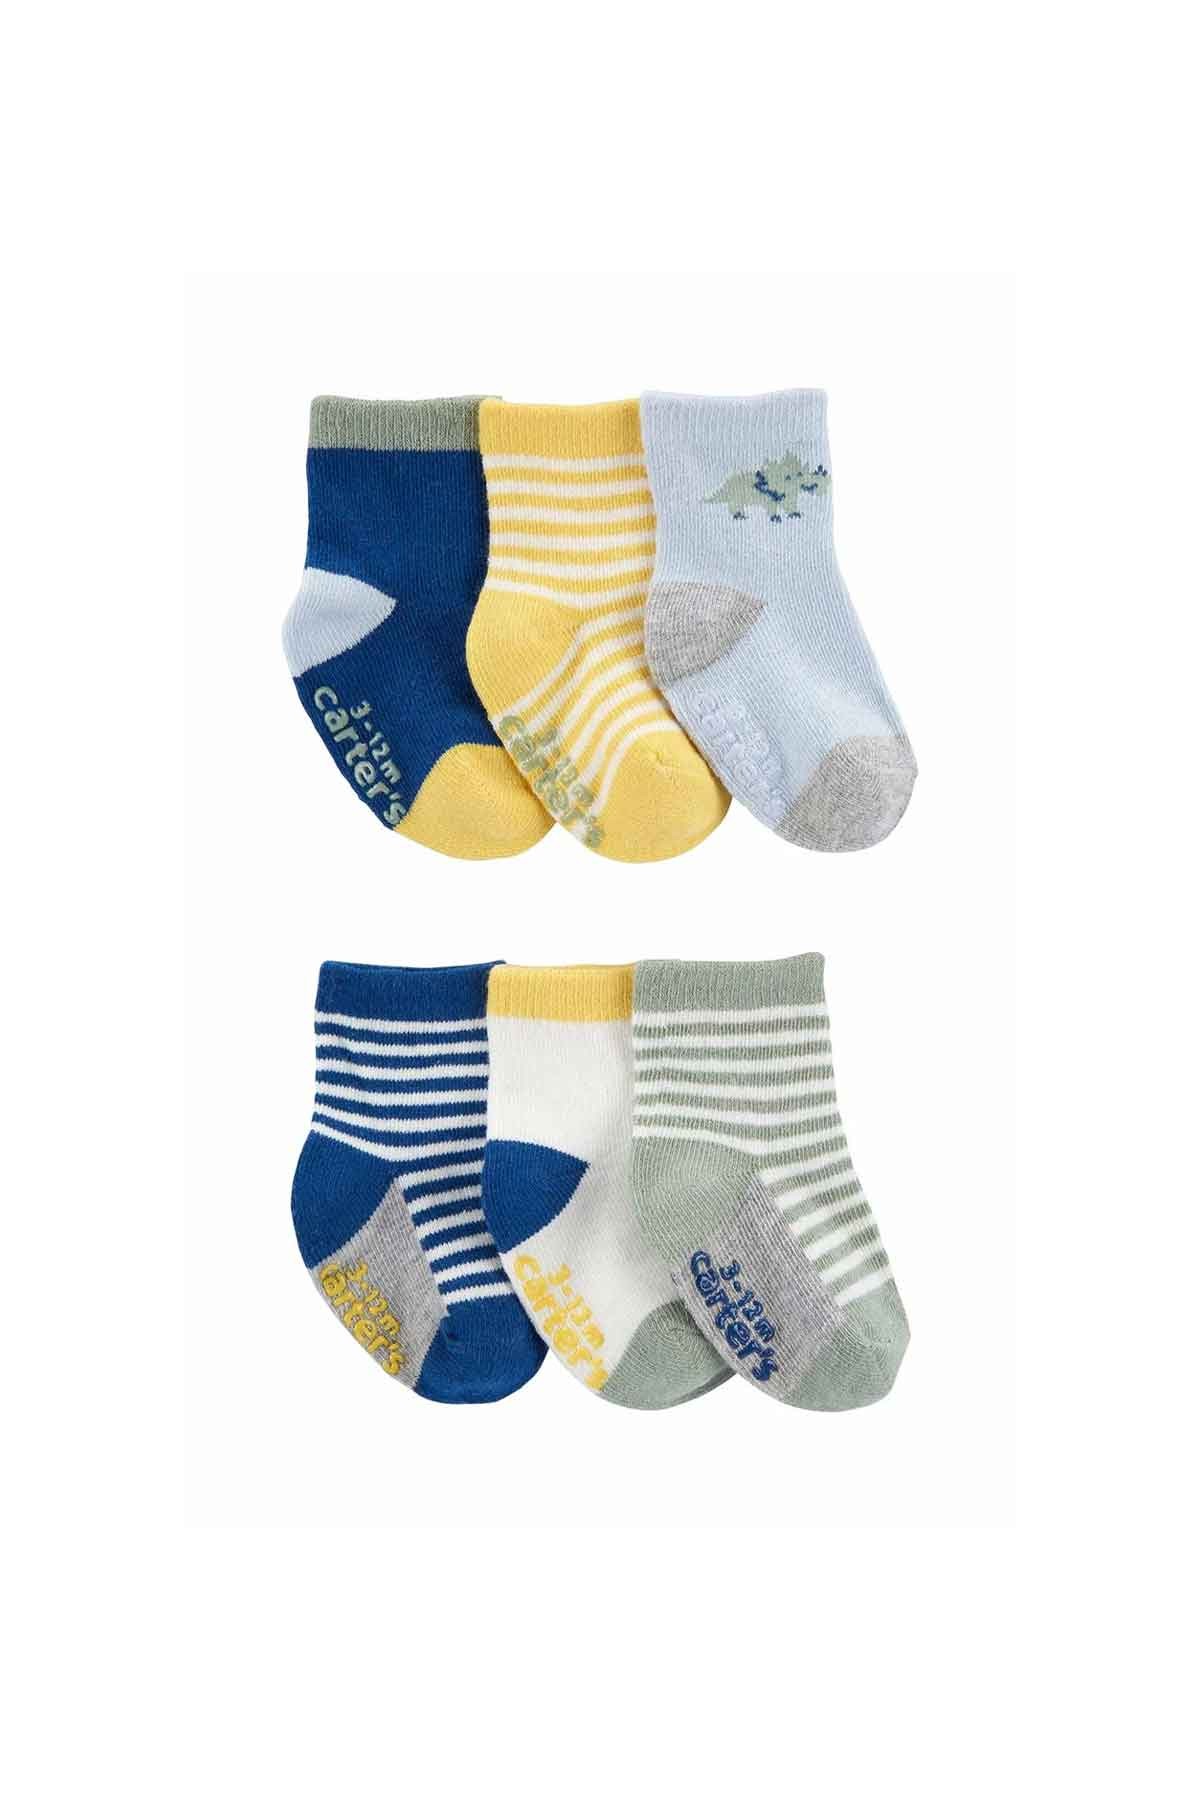 Carter's Erkek Bebek 6'lı Çorap Set Mavi Sarı Desenli